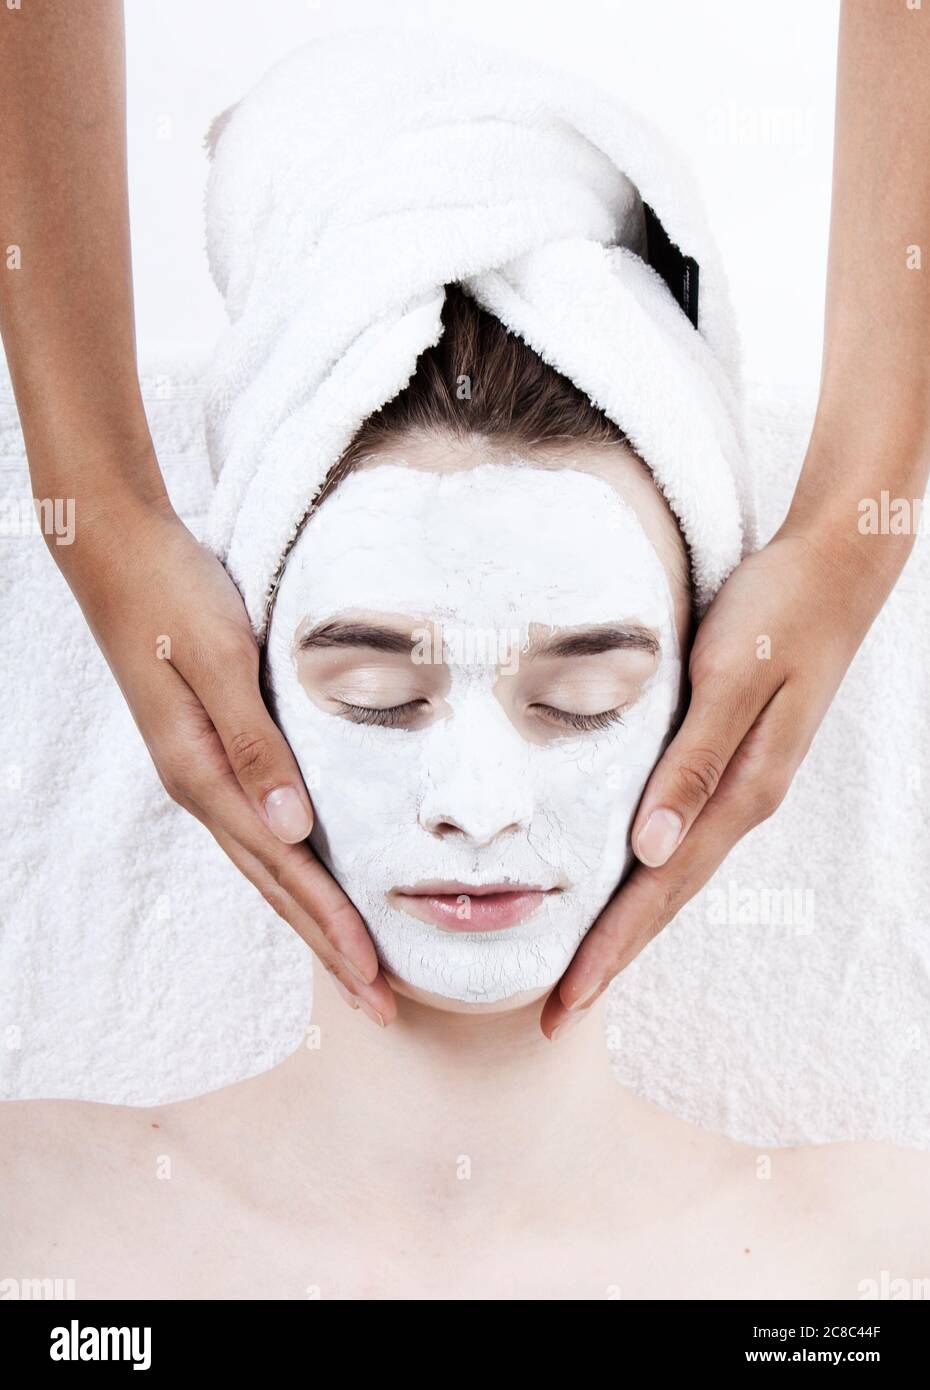 Female having face rub mask in spa Stock Photo